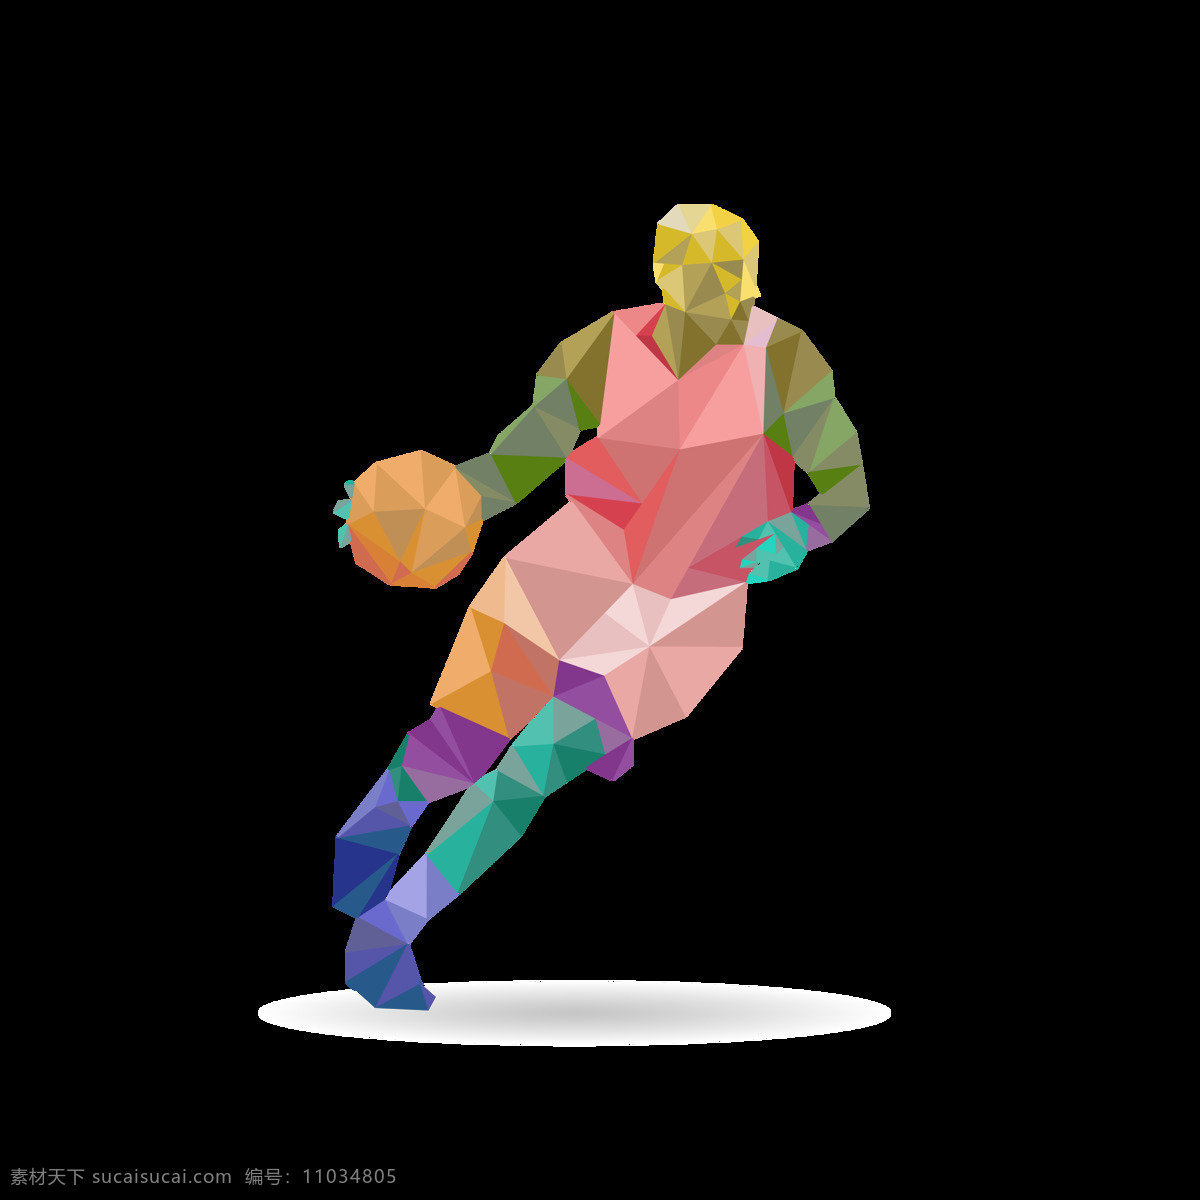 手绘 篮球 人 免 抠 透明 图 层 打蓝球 蓝球运动 投篮 nba cba 篮球比赛 篮球手绘元素 卡通篮球 篮球海报 篮球运动员 投篮剪影 篮球素材 手绘篮球 篮球插图